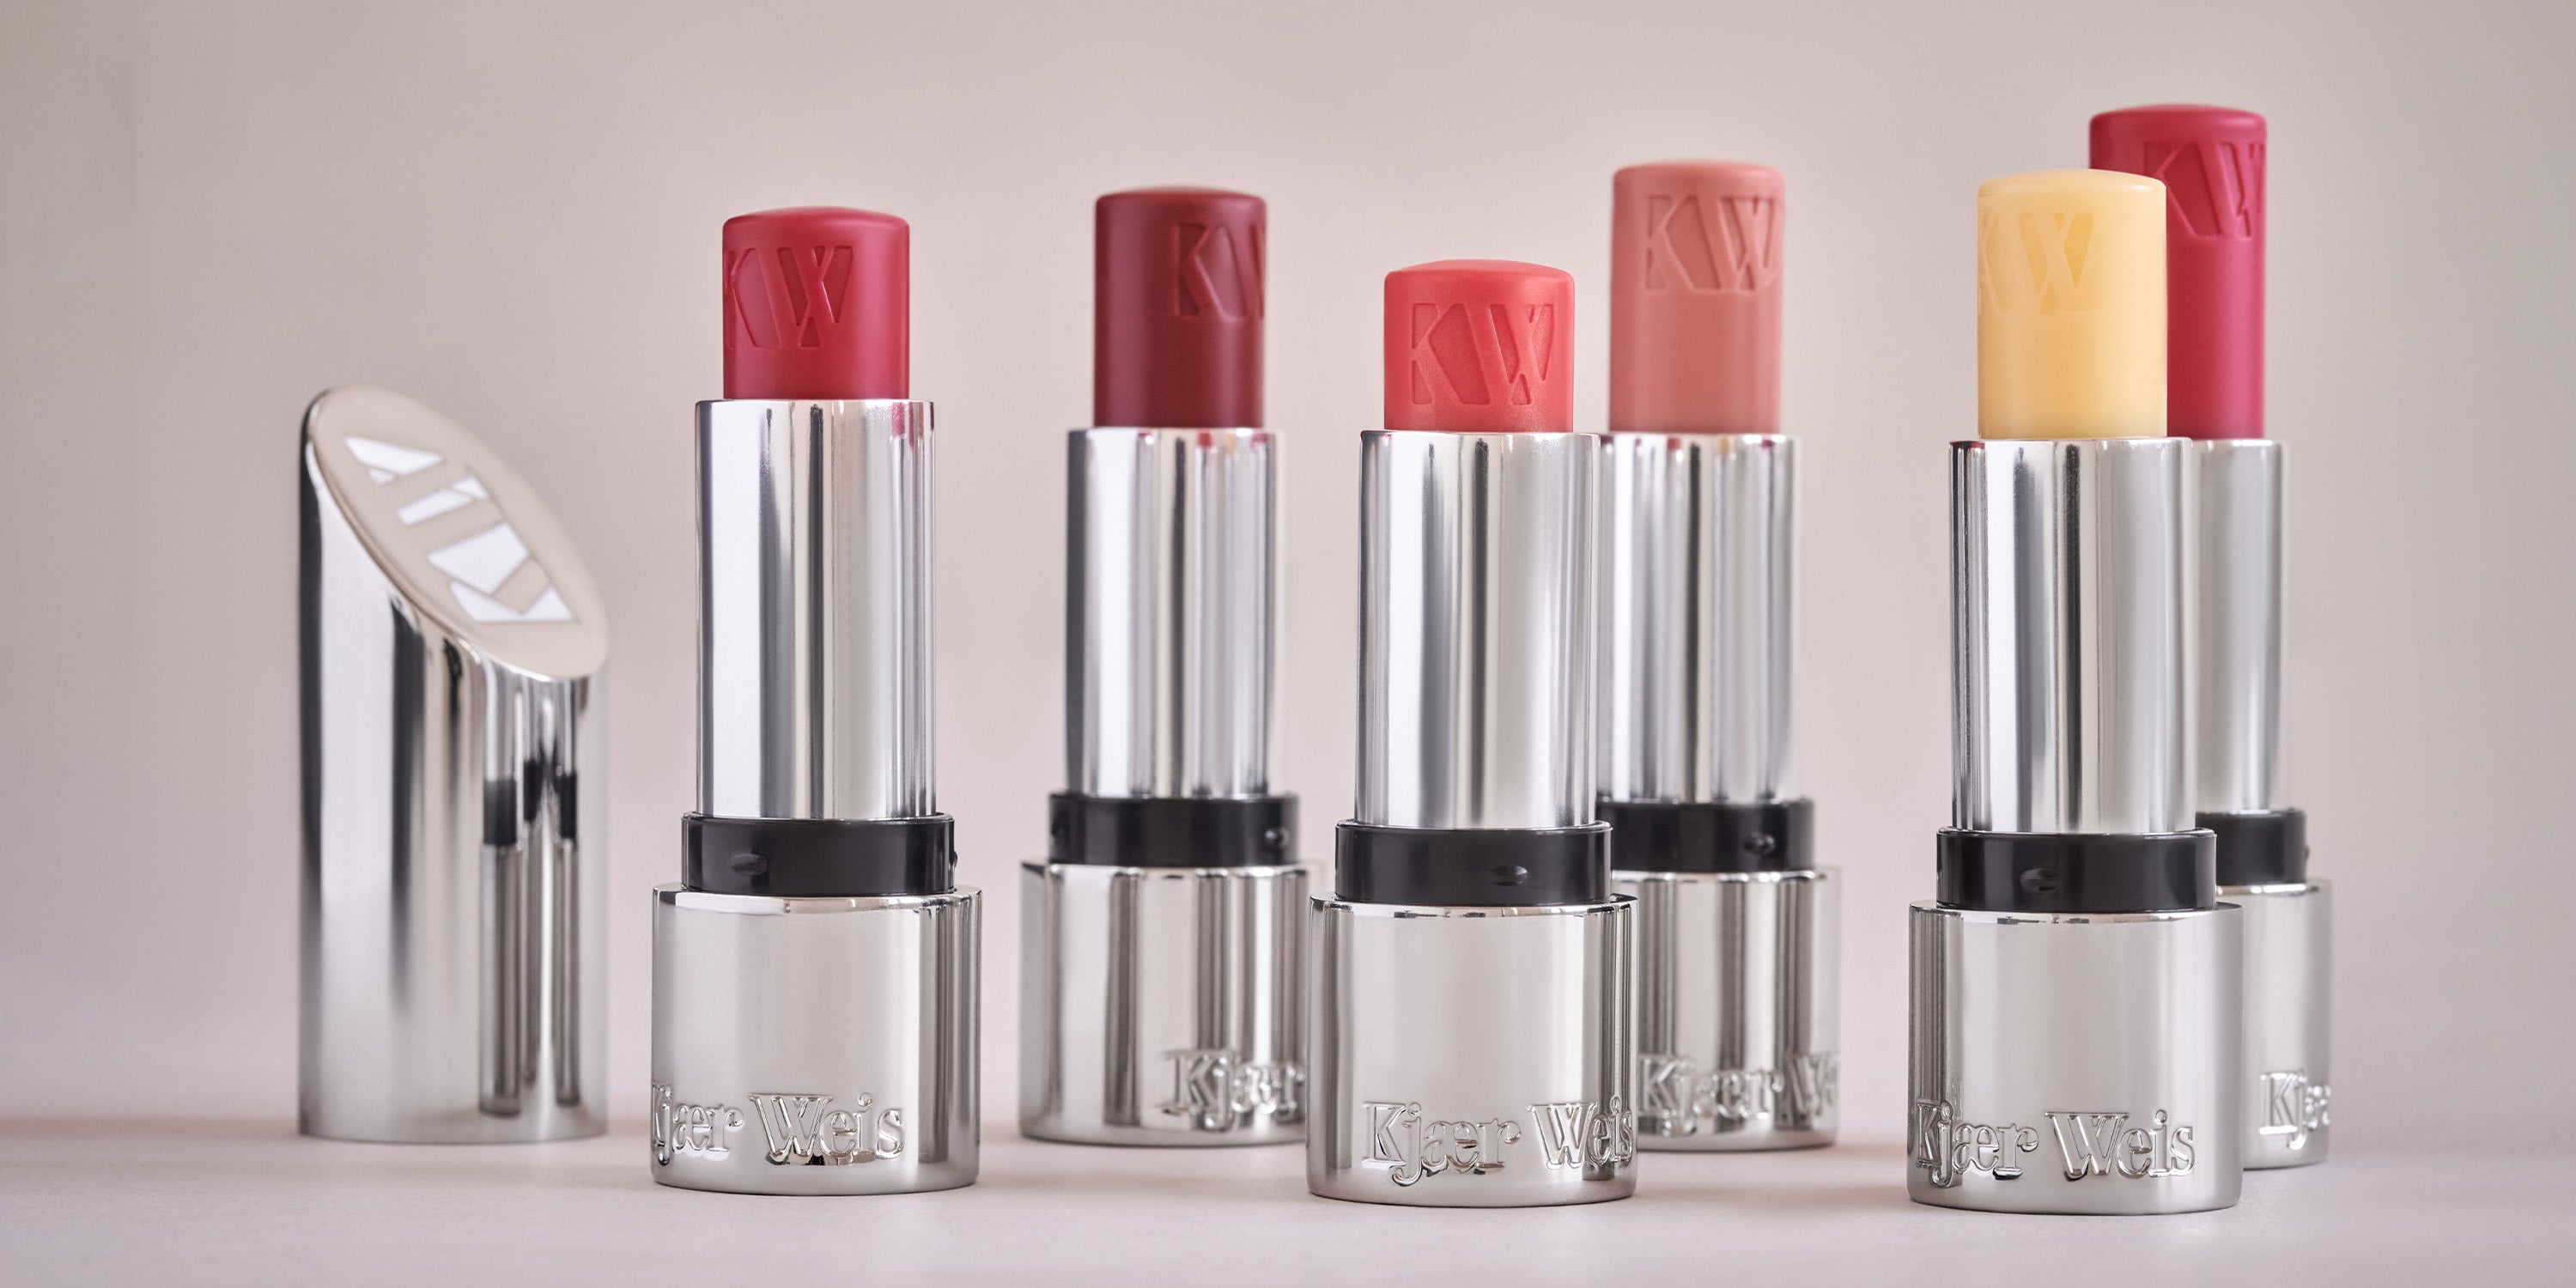 Lip Makeup - Lipsticks, Gloss & Pencils - Kjaer Weis